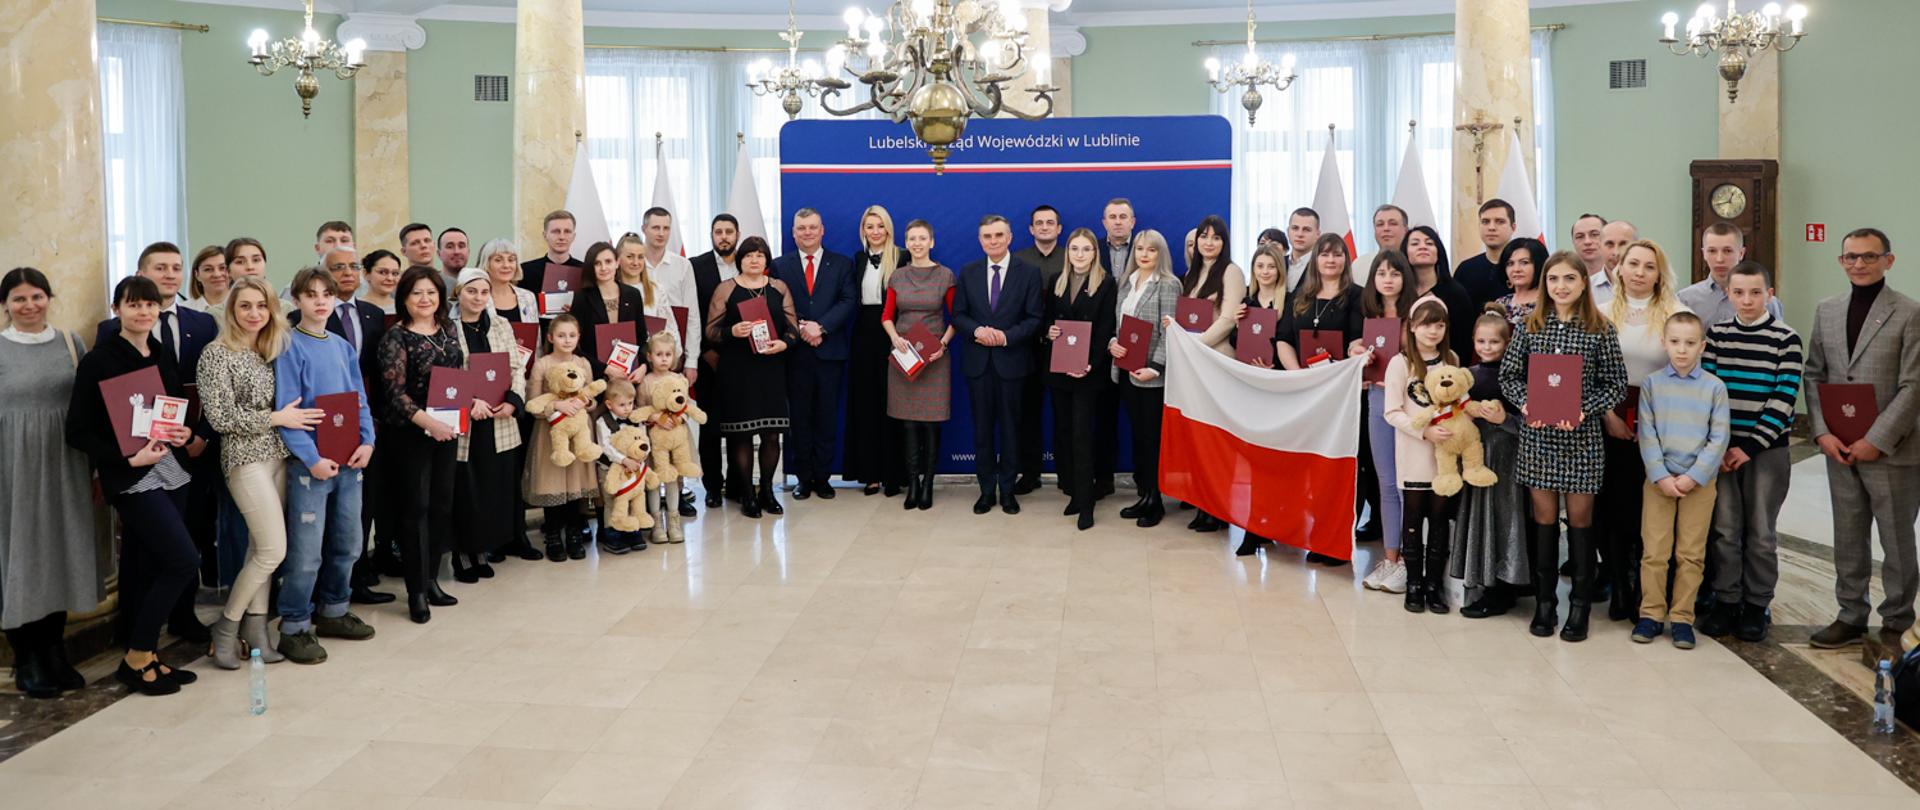 Ceremonia wręczenia aktów nadania obywatelstwa polskiego 